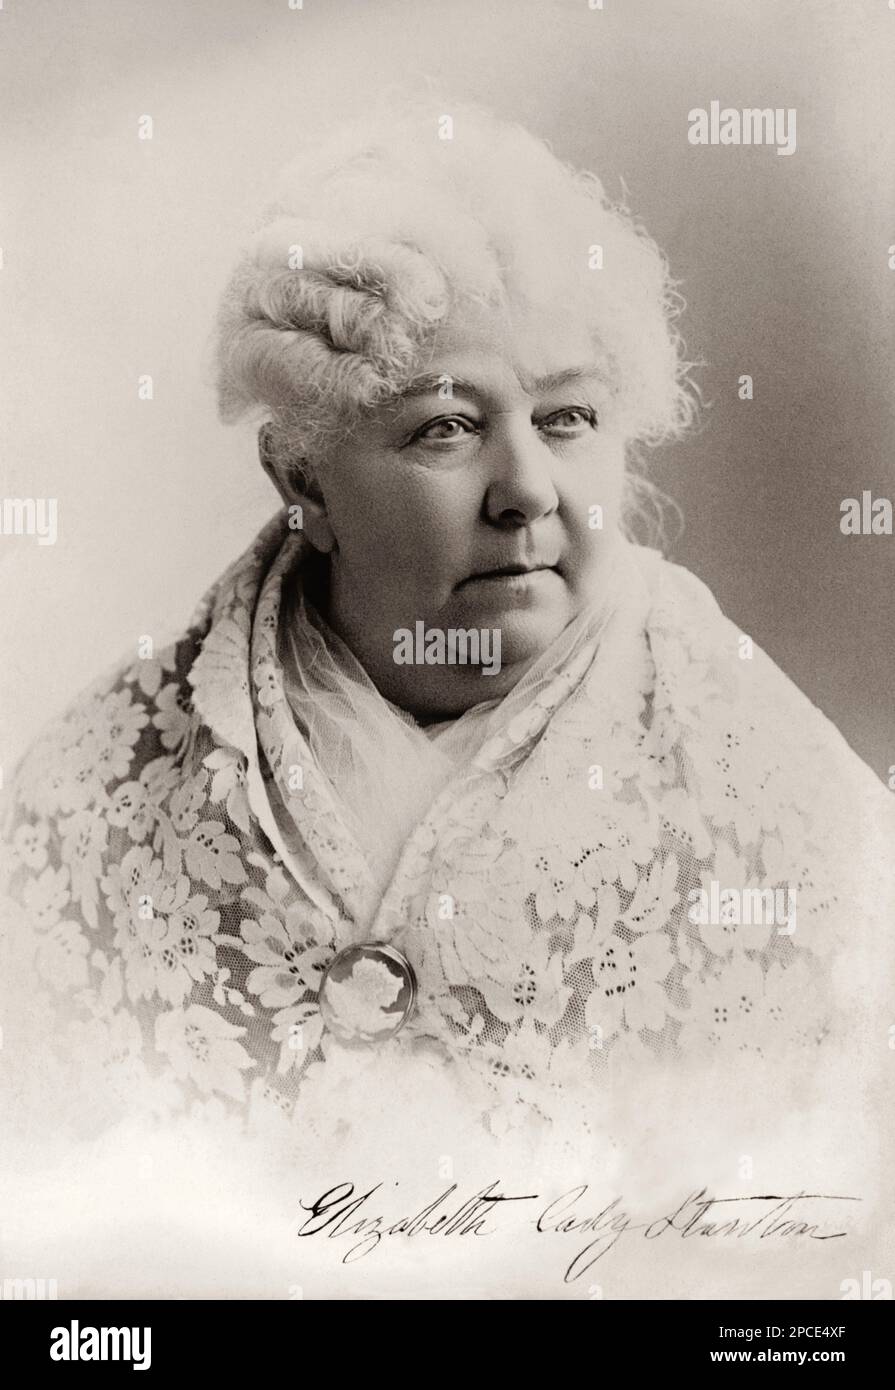 1895 ca , USA : The social activist abolitionist, and leading figure of the early woman's movement ELIZABETH CADY STANTON ( 1815 - 1902 ) . - SUFFRAGETTA - sufraggetta - Sufragist - POLITICO - POLITICIAN - POLITICA - POLITIC - FEMMINISMO - FEMMINISTA  - FEMMINISTE - SUFFRAGETTE - USA - ritratto - portrait  - FEMMINISM - FEMMINIST - SUFFRAGIO UNIVERSALE - VOTO POLITICO ALLE DONNE - FASHION - MODA  - OTTOCENTO - 800's - '800 - donna anziana vecchia - ancient old woman - lace - pizzo - cameo - white hair - capelli bianchi - autograph - autografo - firma - signature ----  Archivio GBB Stock Photo